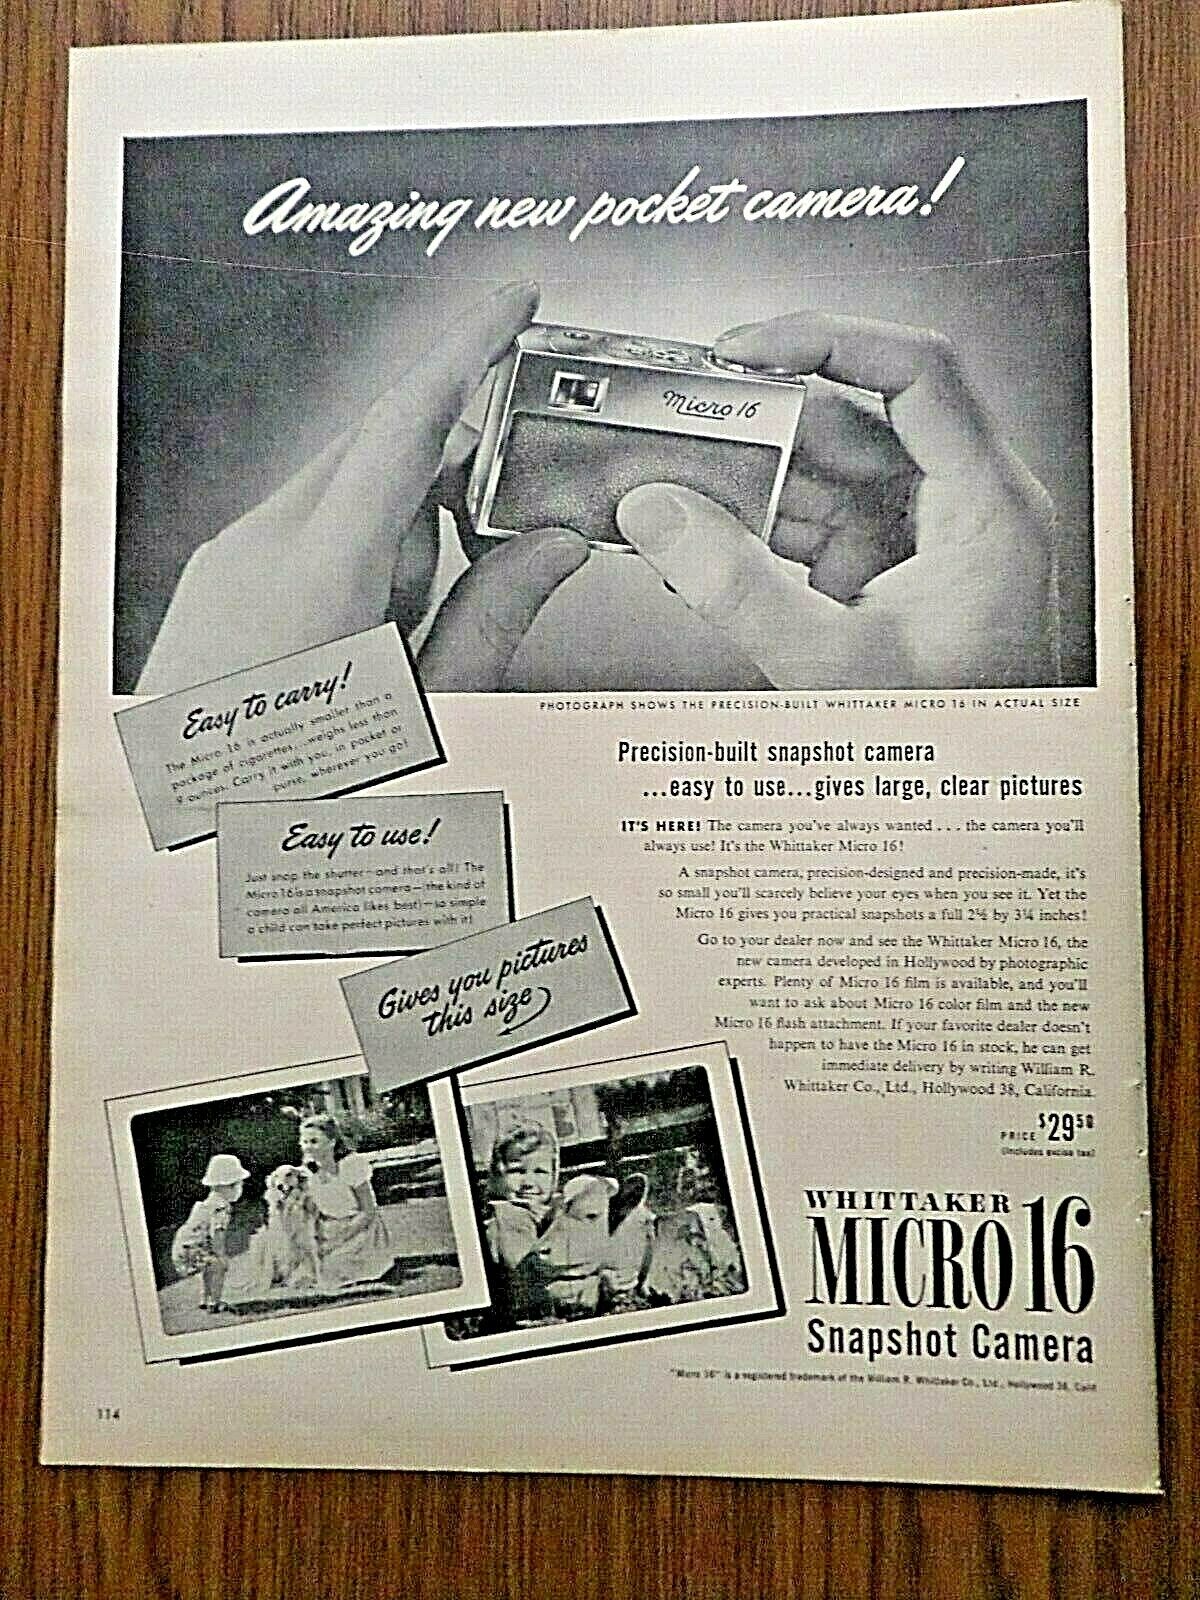 1947 Whittaker Micro 16 Snapshot Camera Ad